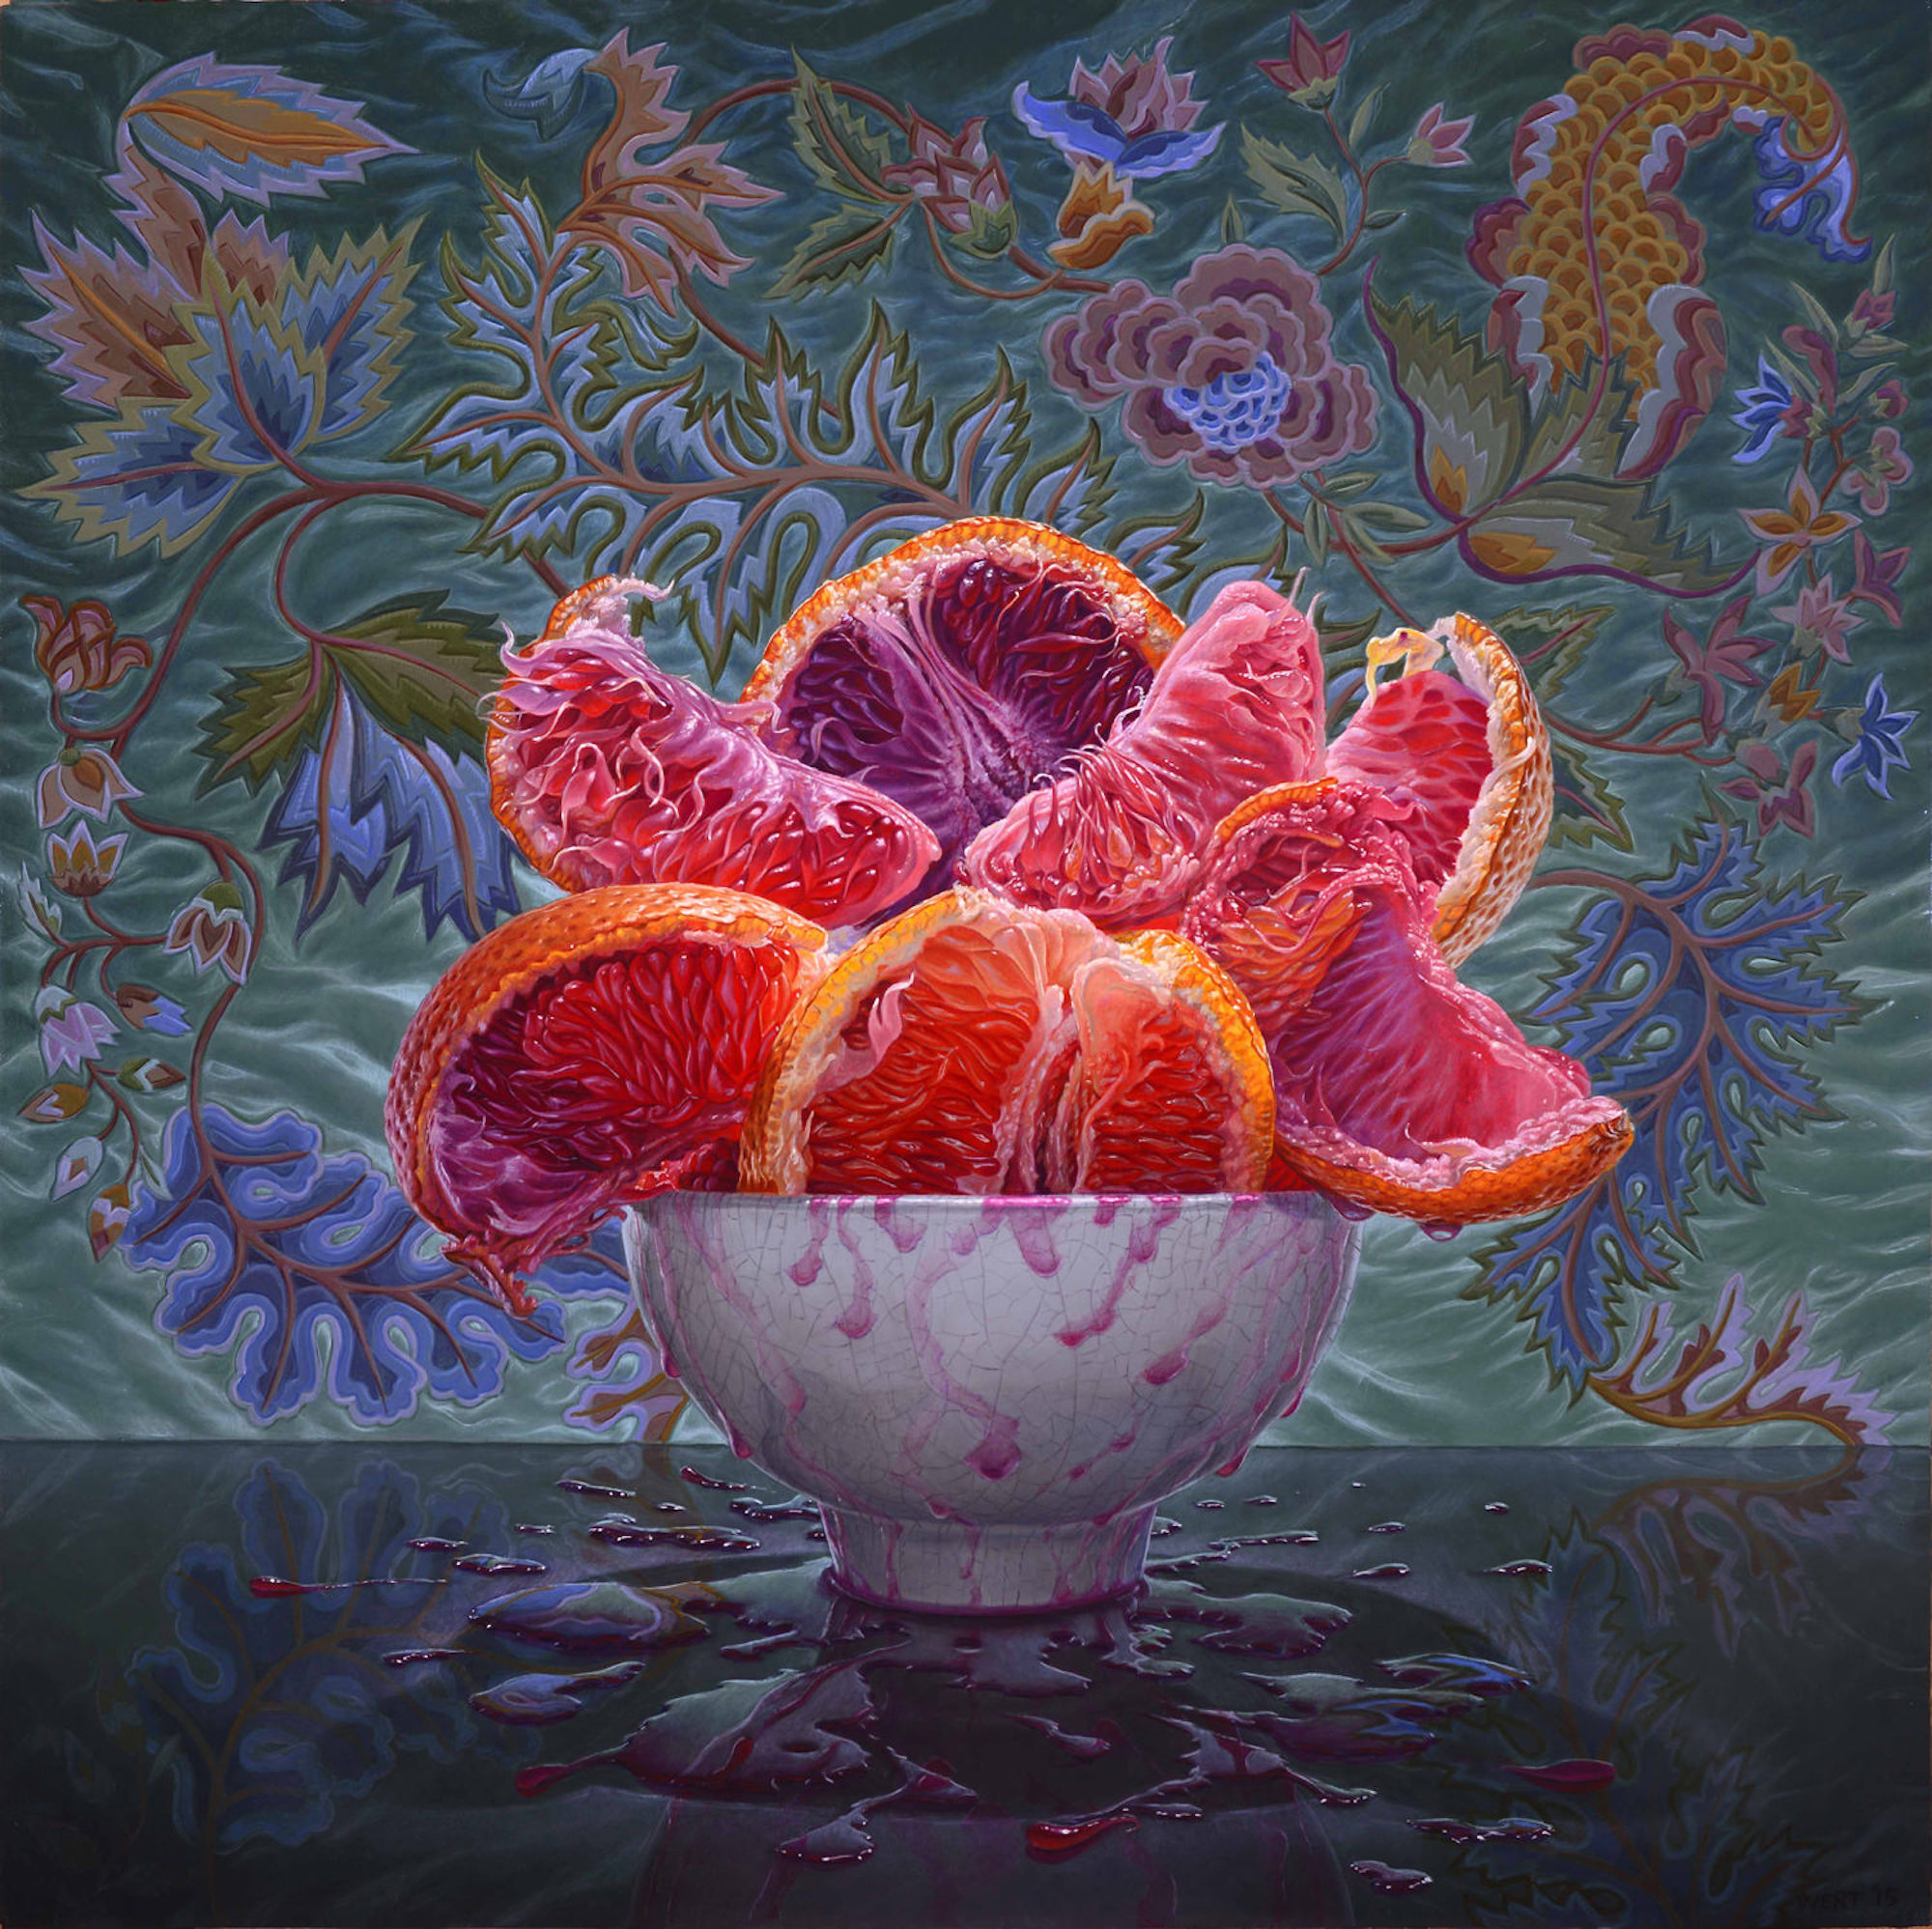 Eric Wert, Blood Oranges, 2015